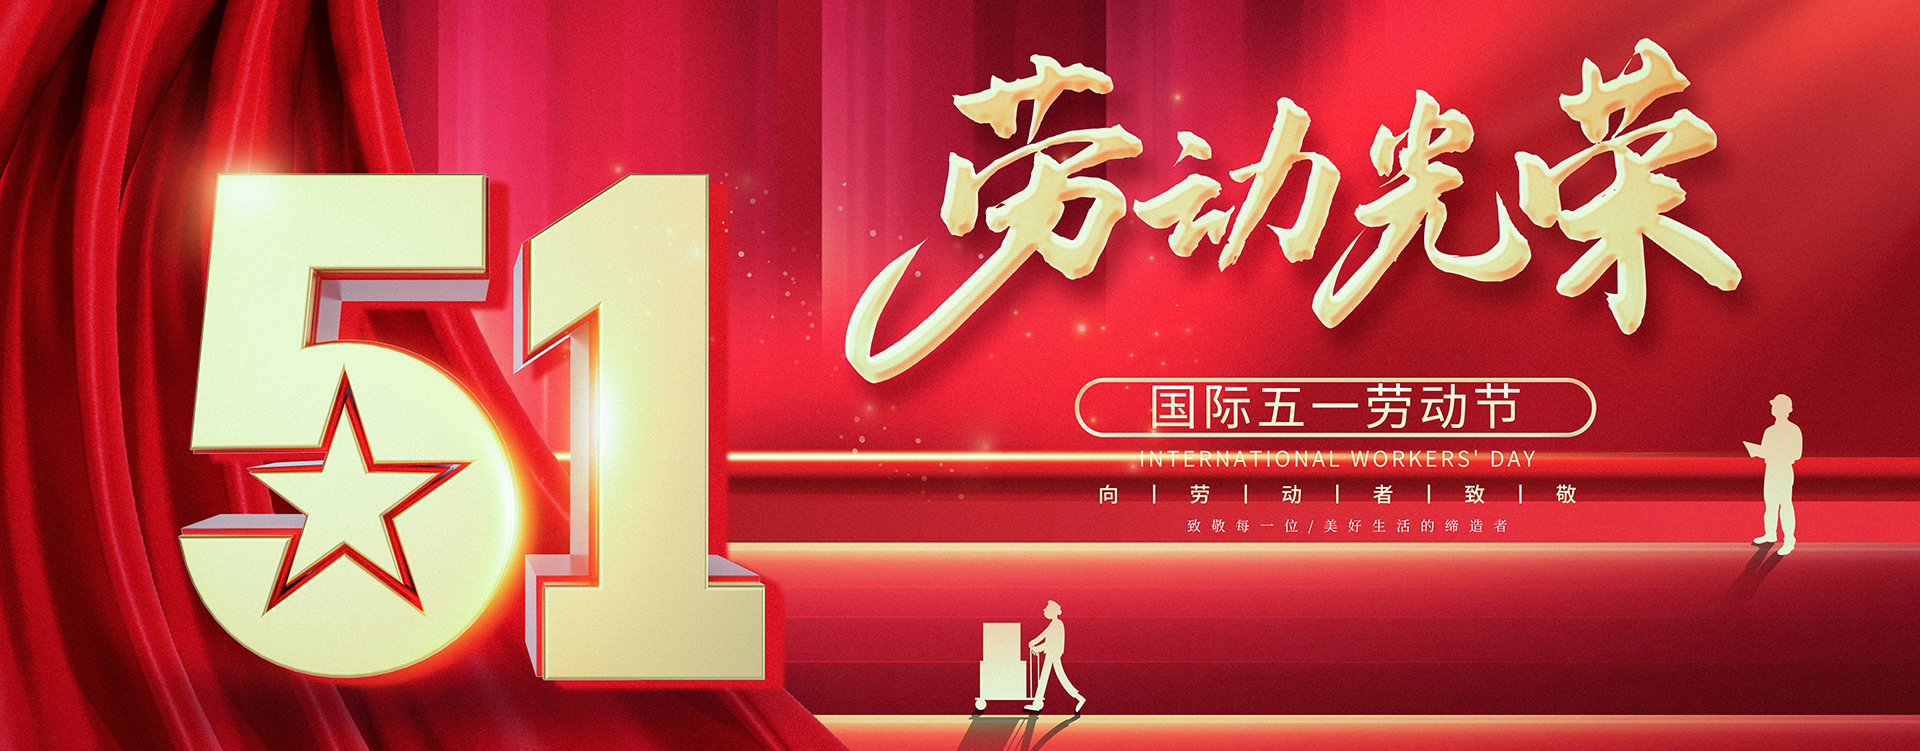 惠州市艾宝特智能科技股份有限公司祝大家51劳动节快乐